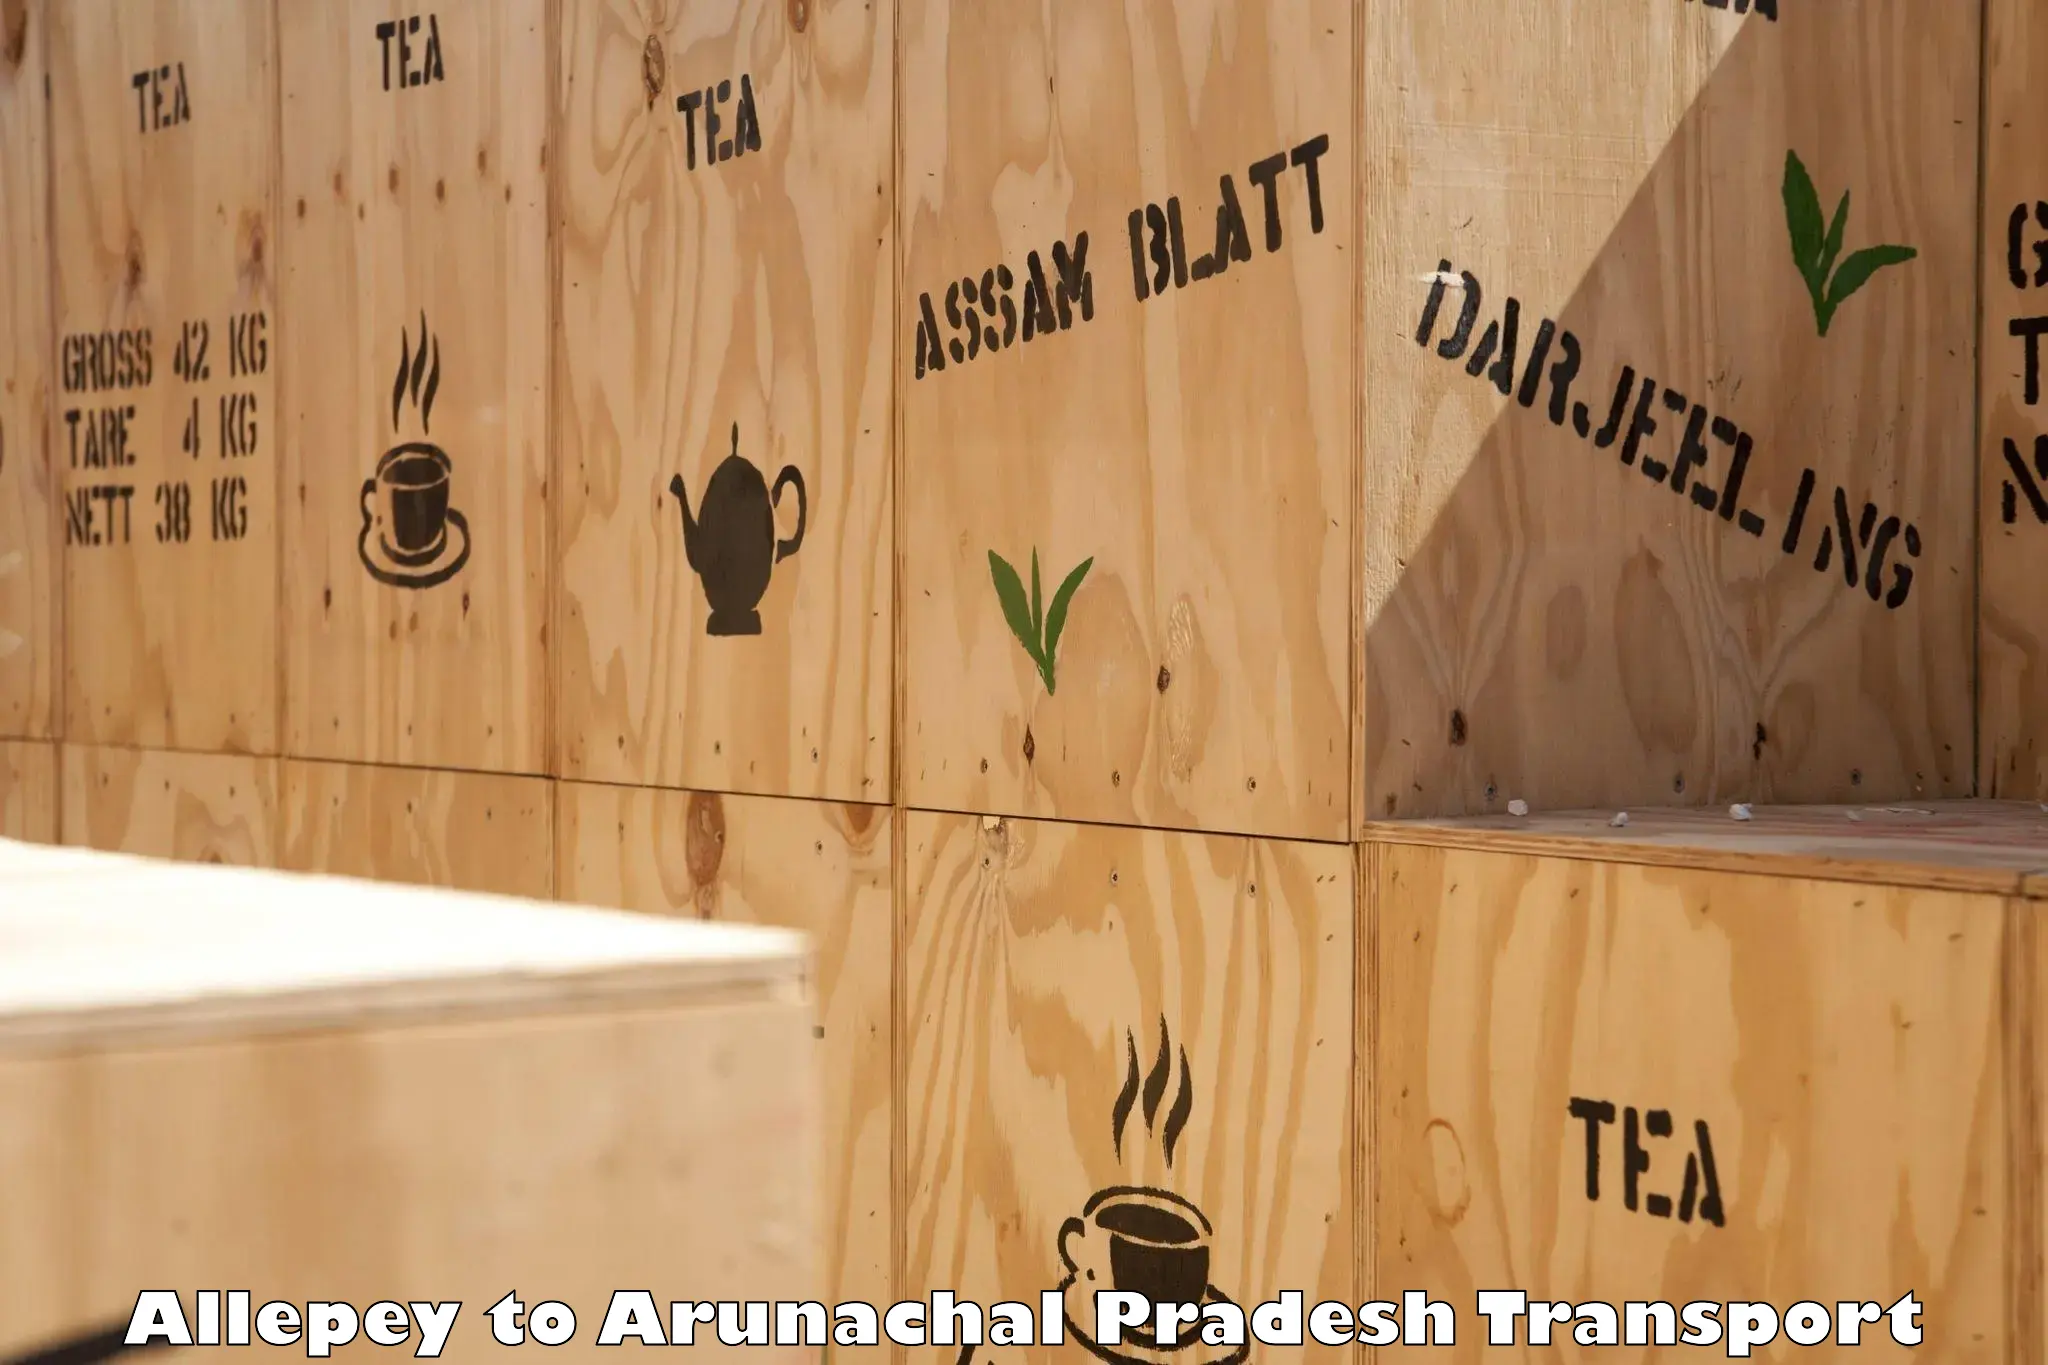 Container transport service Allepey to Arunachal Pradesh